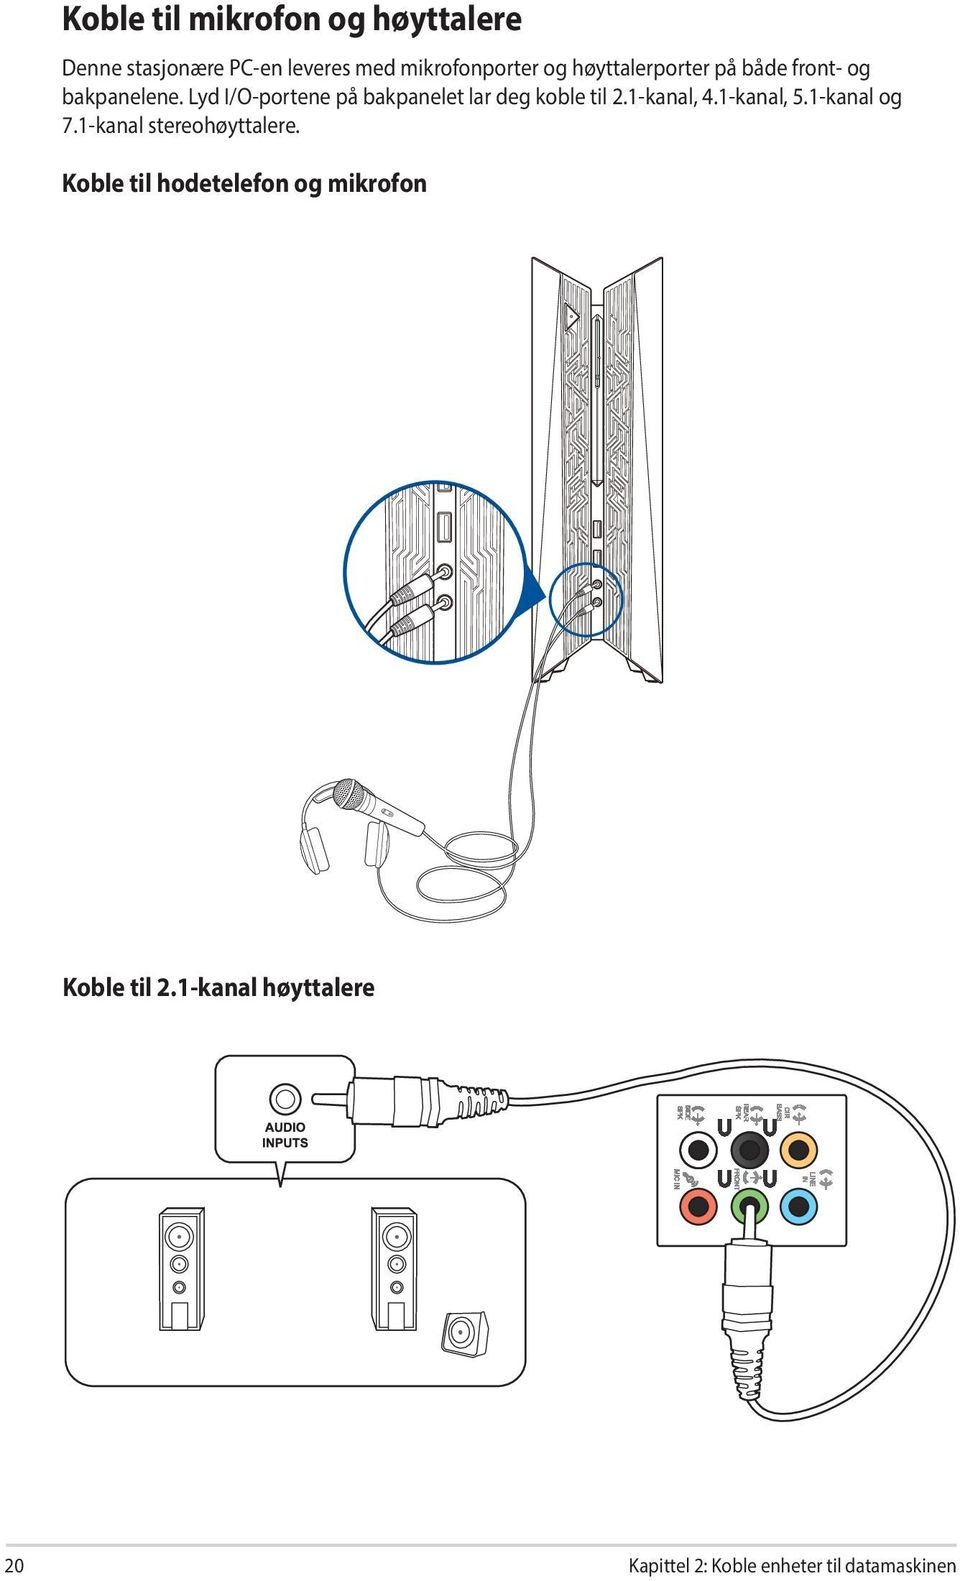 Lyd I/O-portene på bakpanelet lar deg koble til 2.1-kanal, 4.1-kanal, 5.1-kanal og 7.